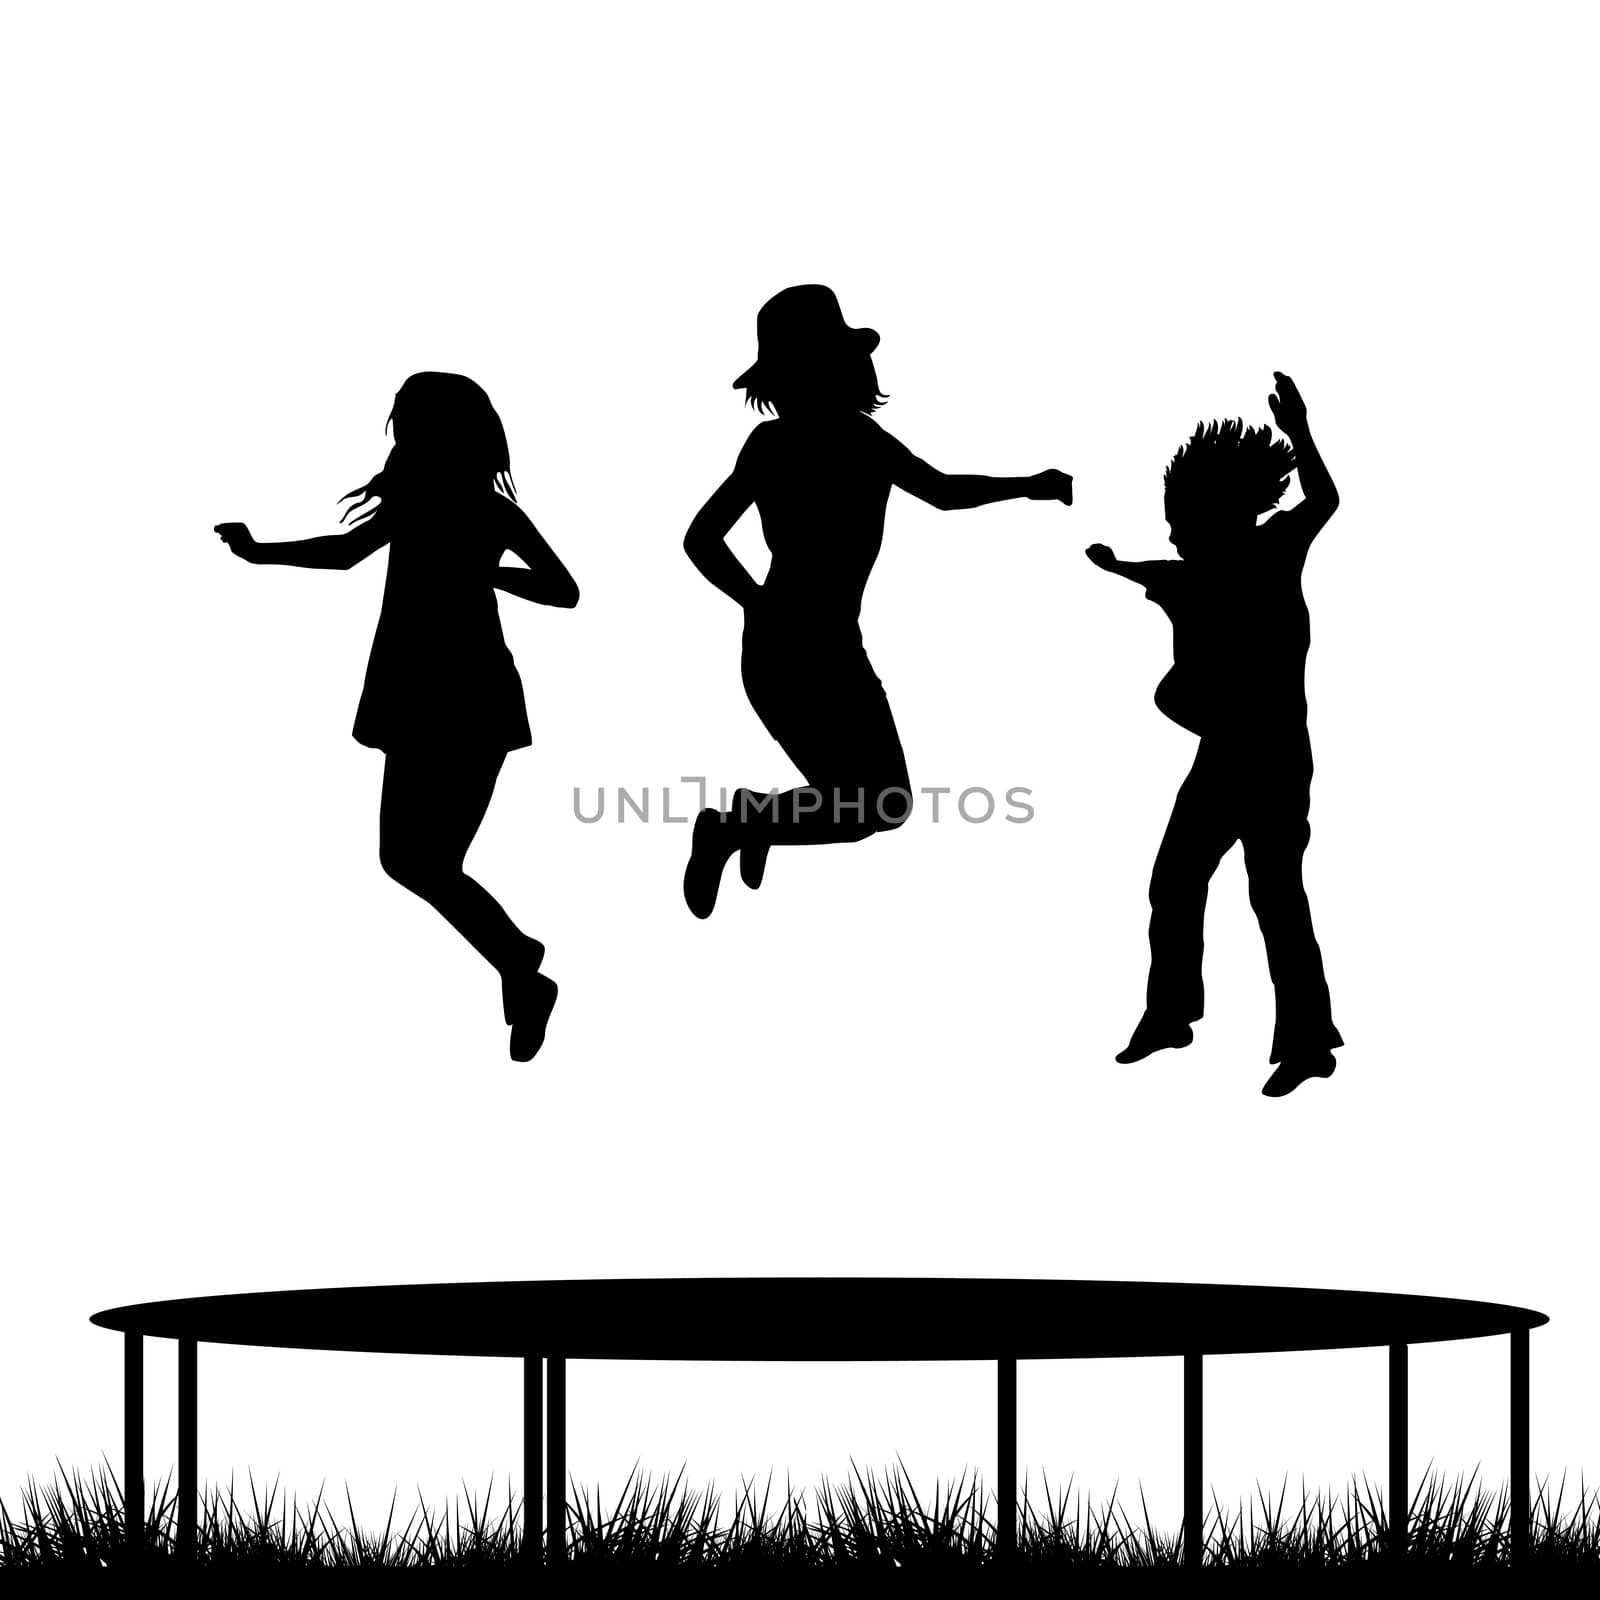 Children jumping on garden trampoline by hibrida13